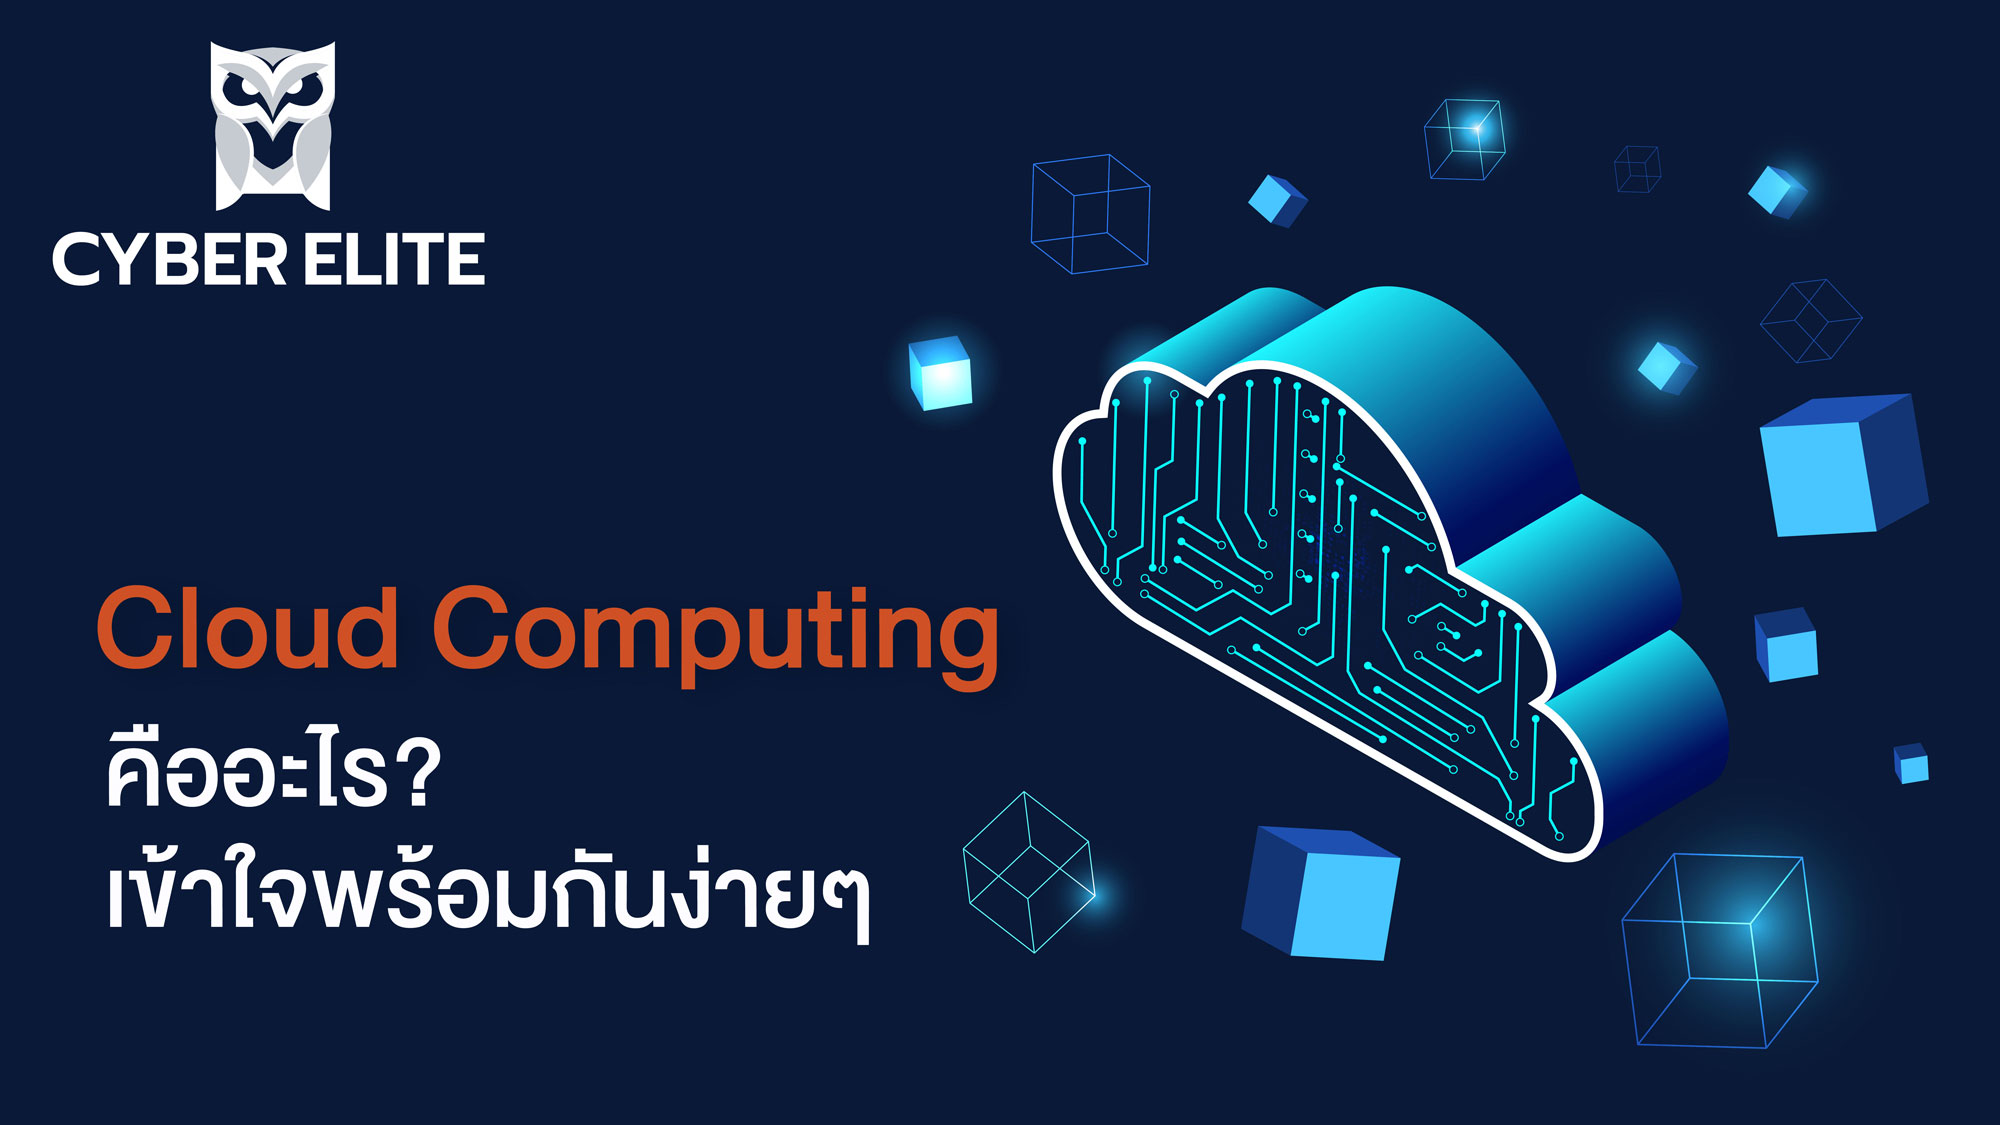 Cloud computing คืออะไร? เข้าใจพร้อมกันง่ายๆ